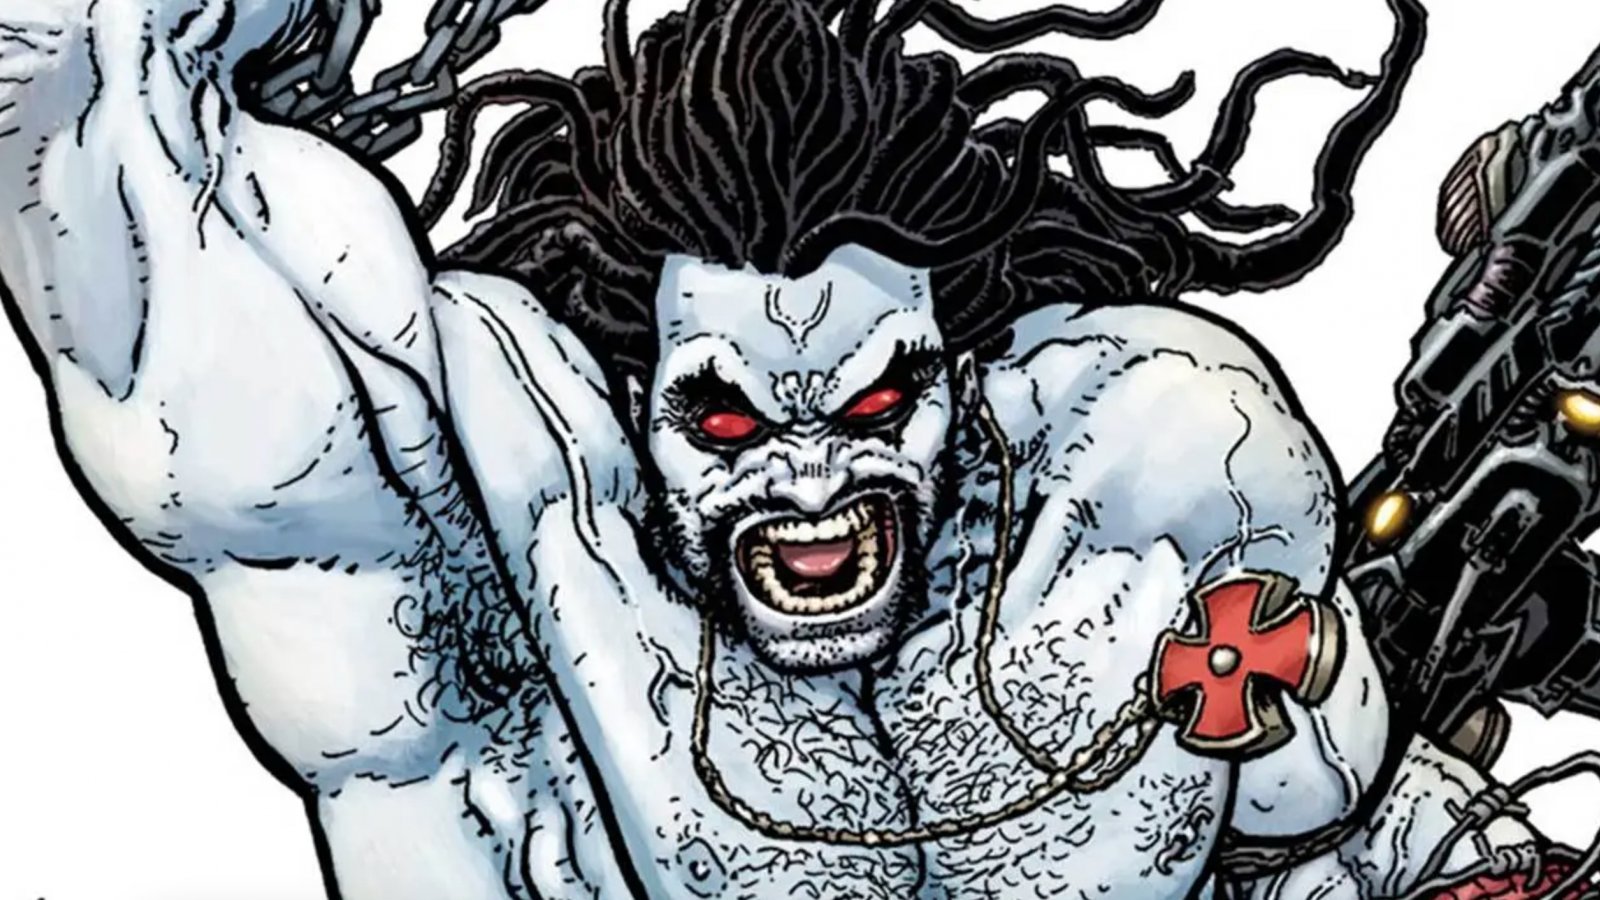 James Gunn pubblica un'immagine di Lobo sul suo profilo social: sarà il suo nuovo progetto per DC?